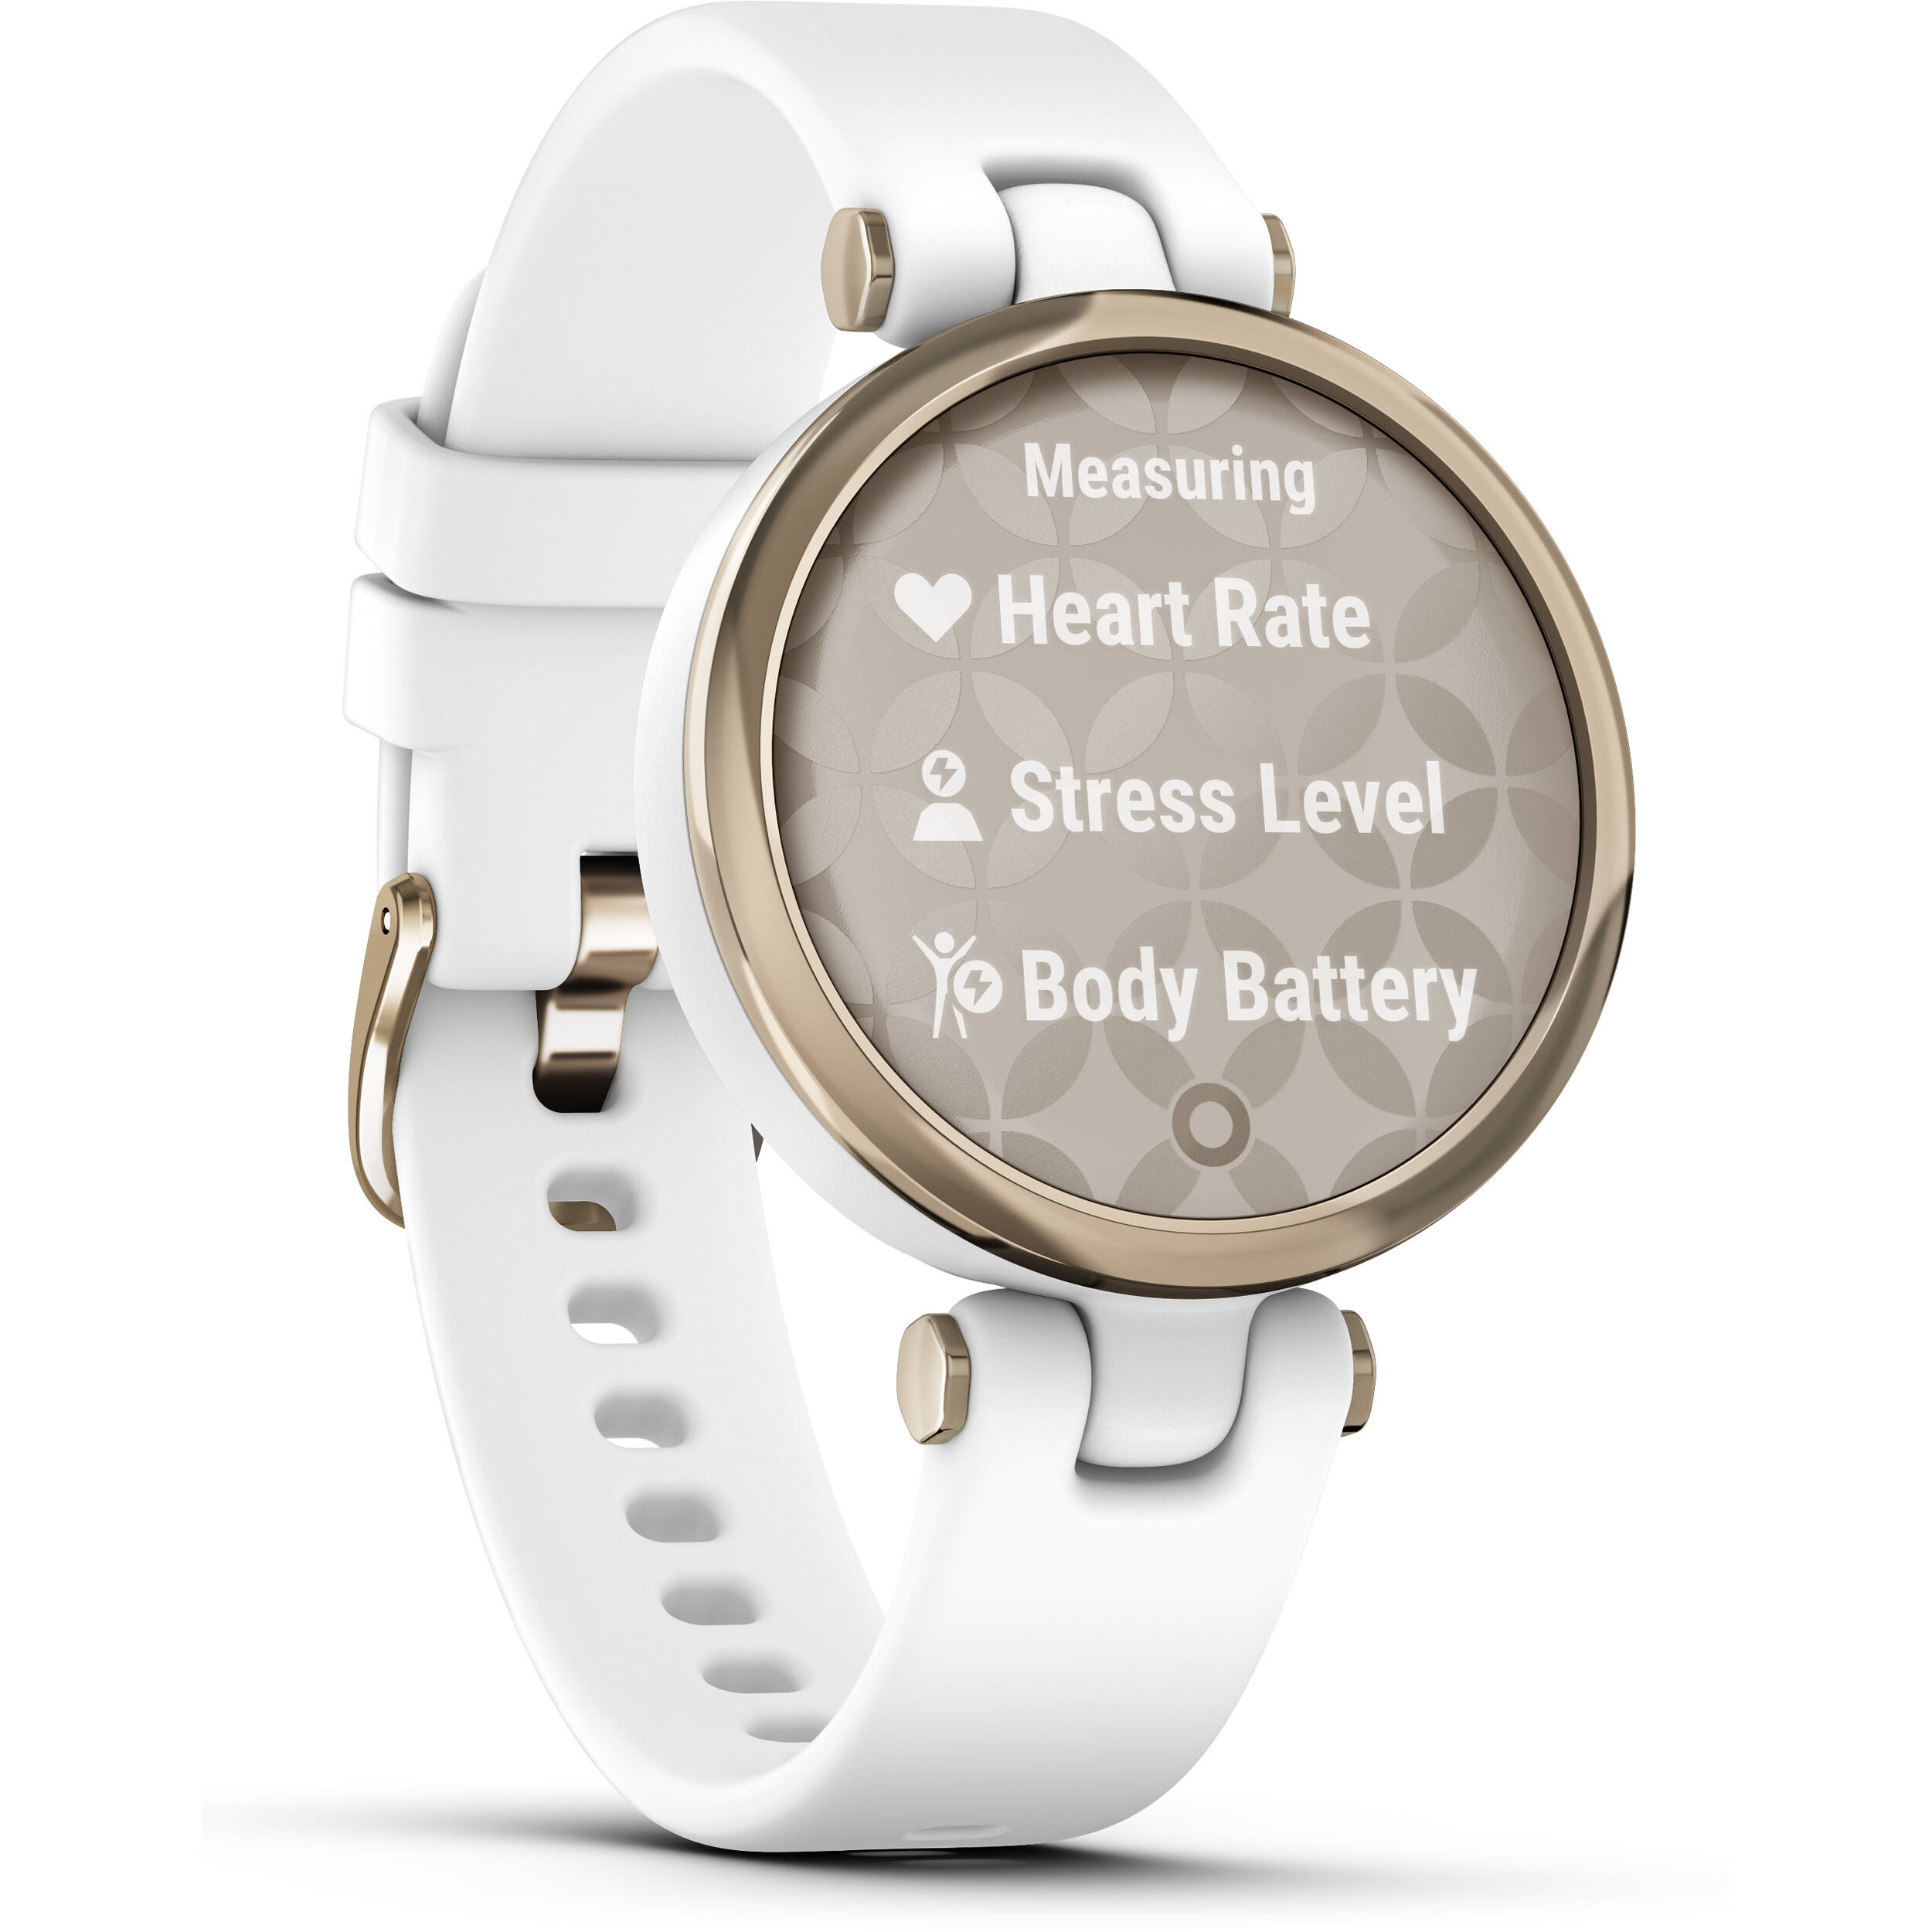 Smartwatch Garmin Lily Sport 010-02384-00 com GPS/Bluetooth - Cream Gold